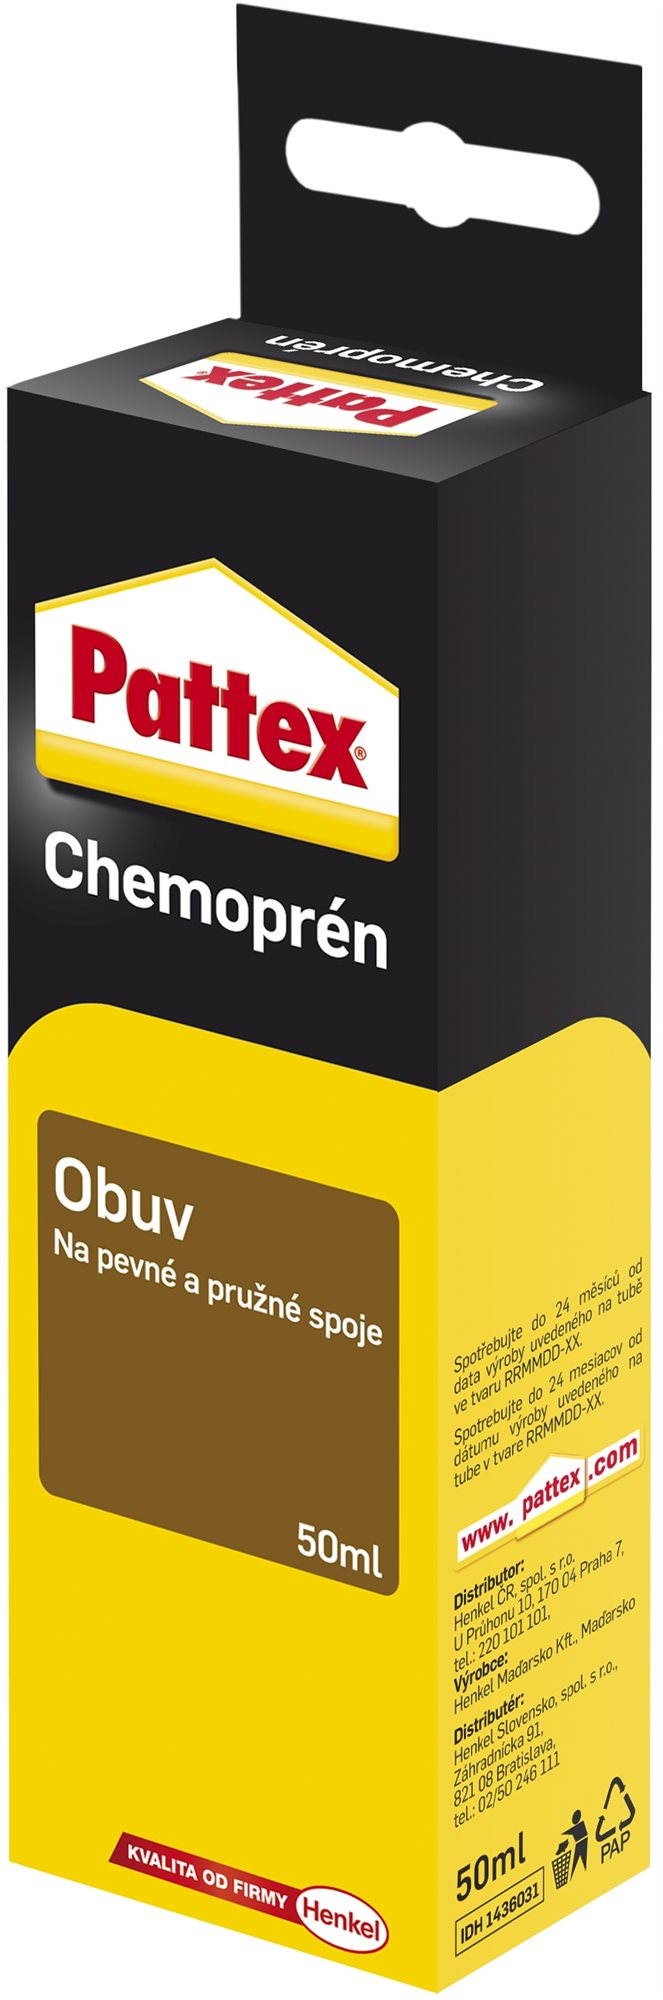 PATTEX Chemoprén cipő 50 ml